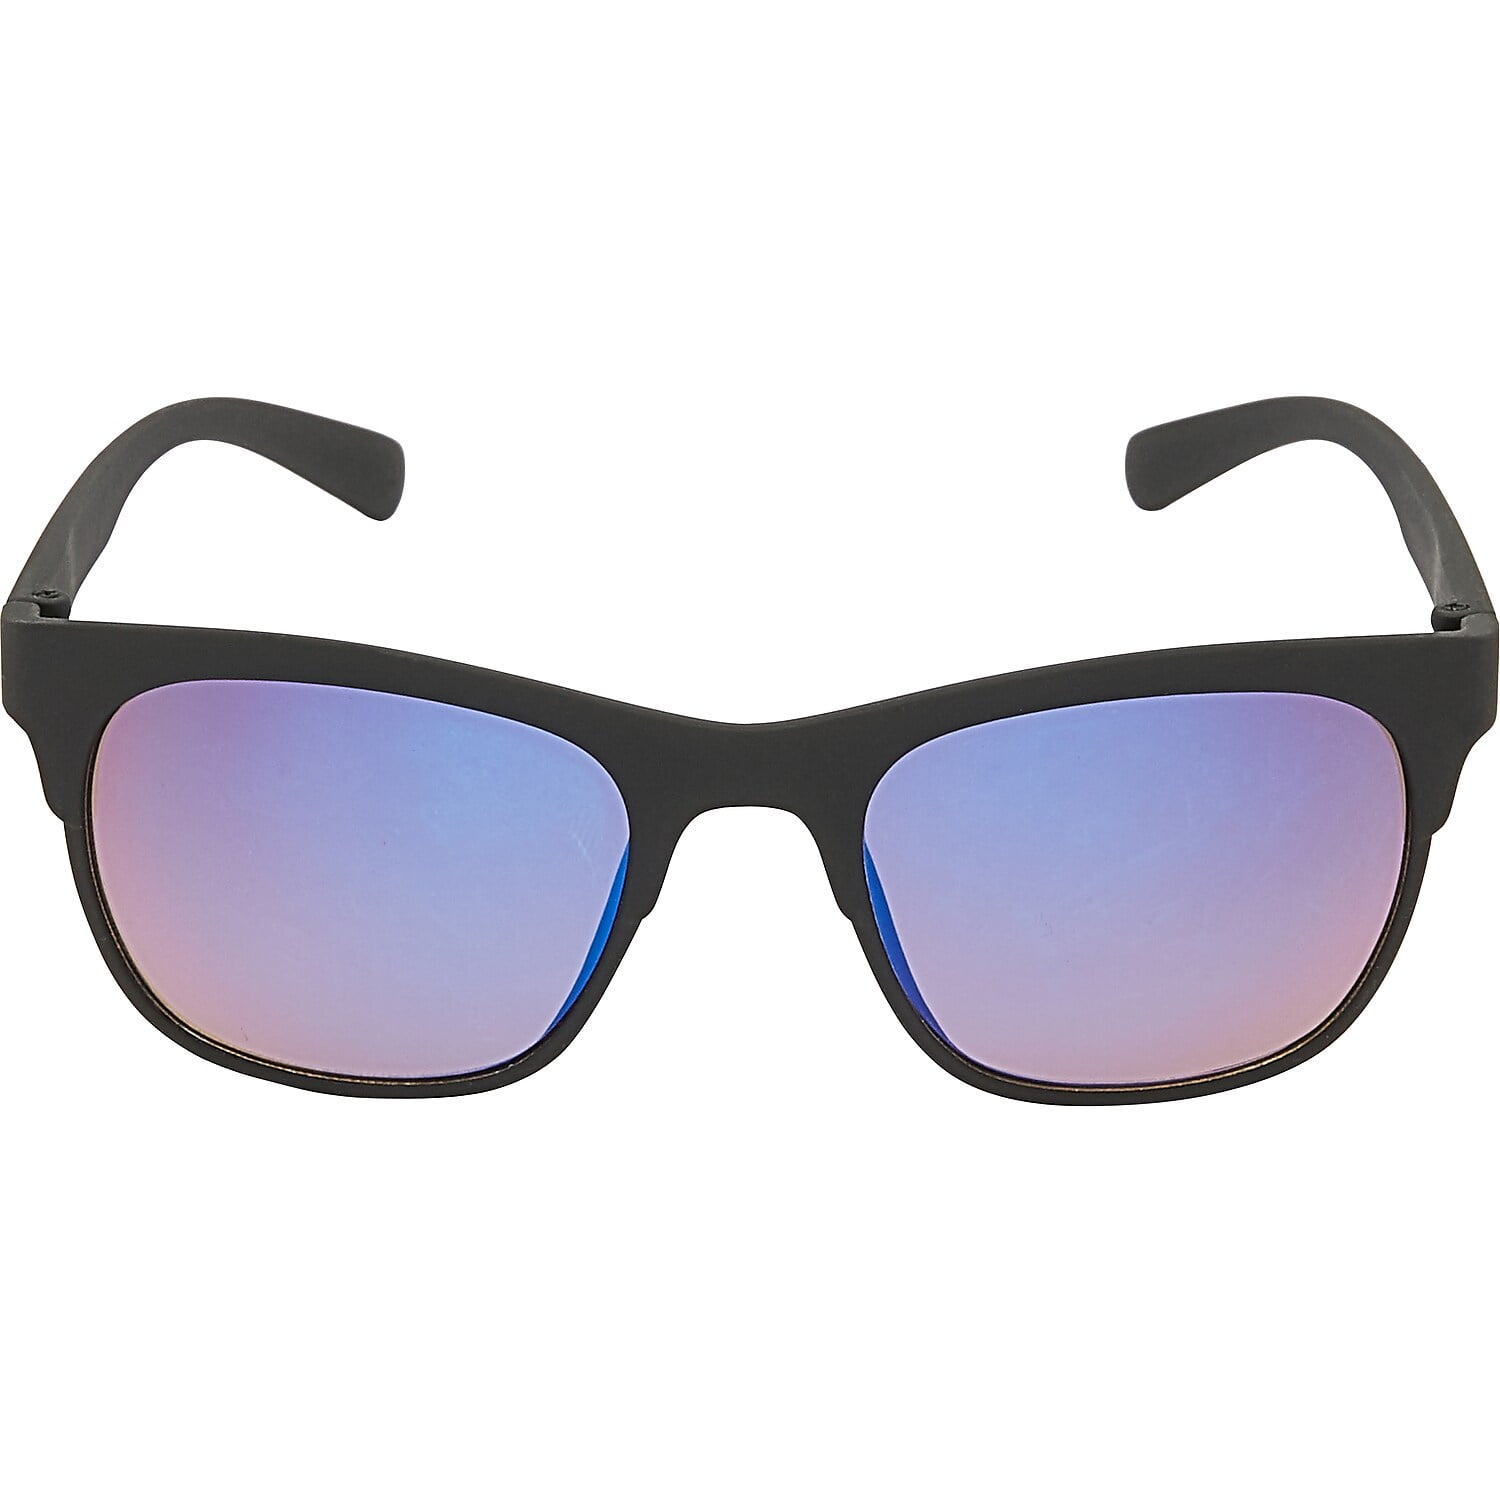 AllTopBargains 2 Polarized Reading Inner Bifocal Sunglasses Mens Womens UV Fishing Black +200, adult Unisex, Size: 5